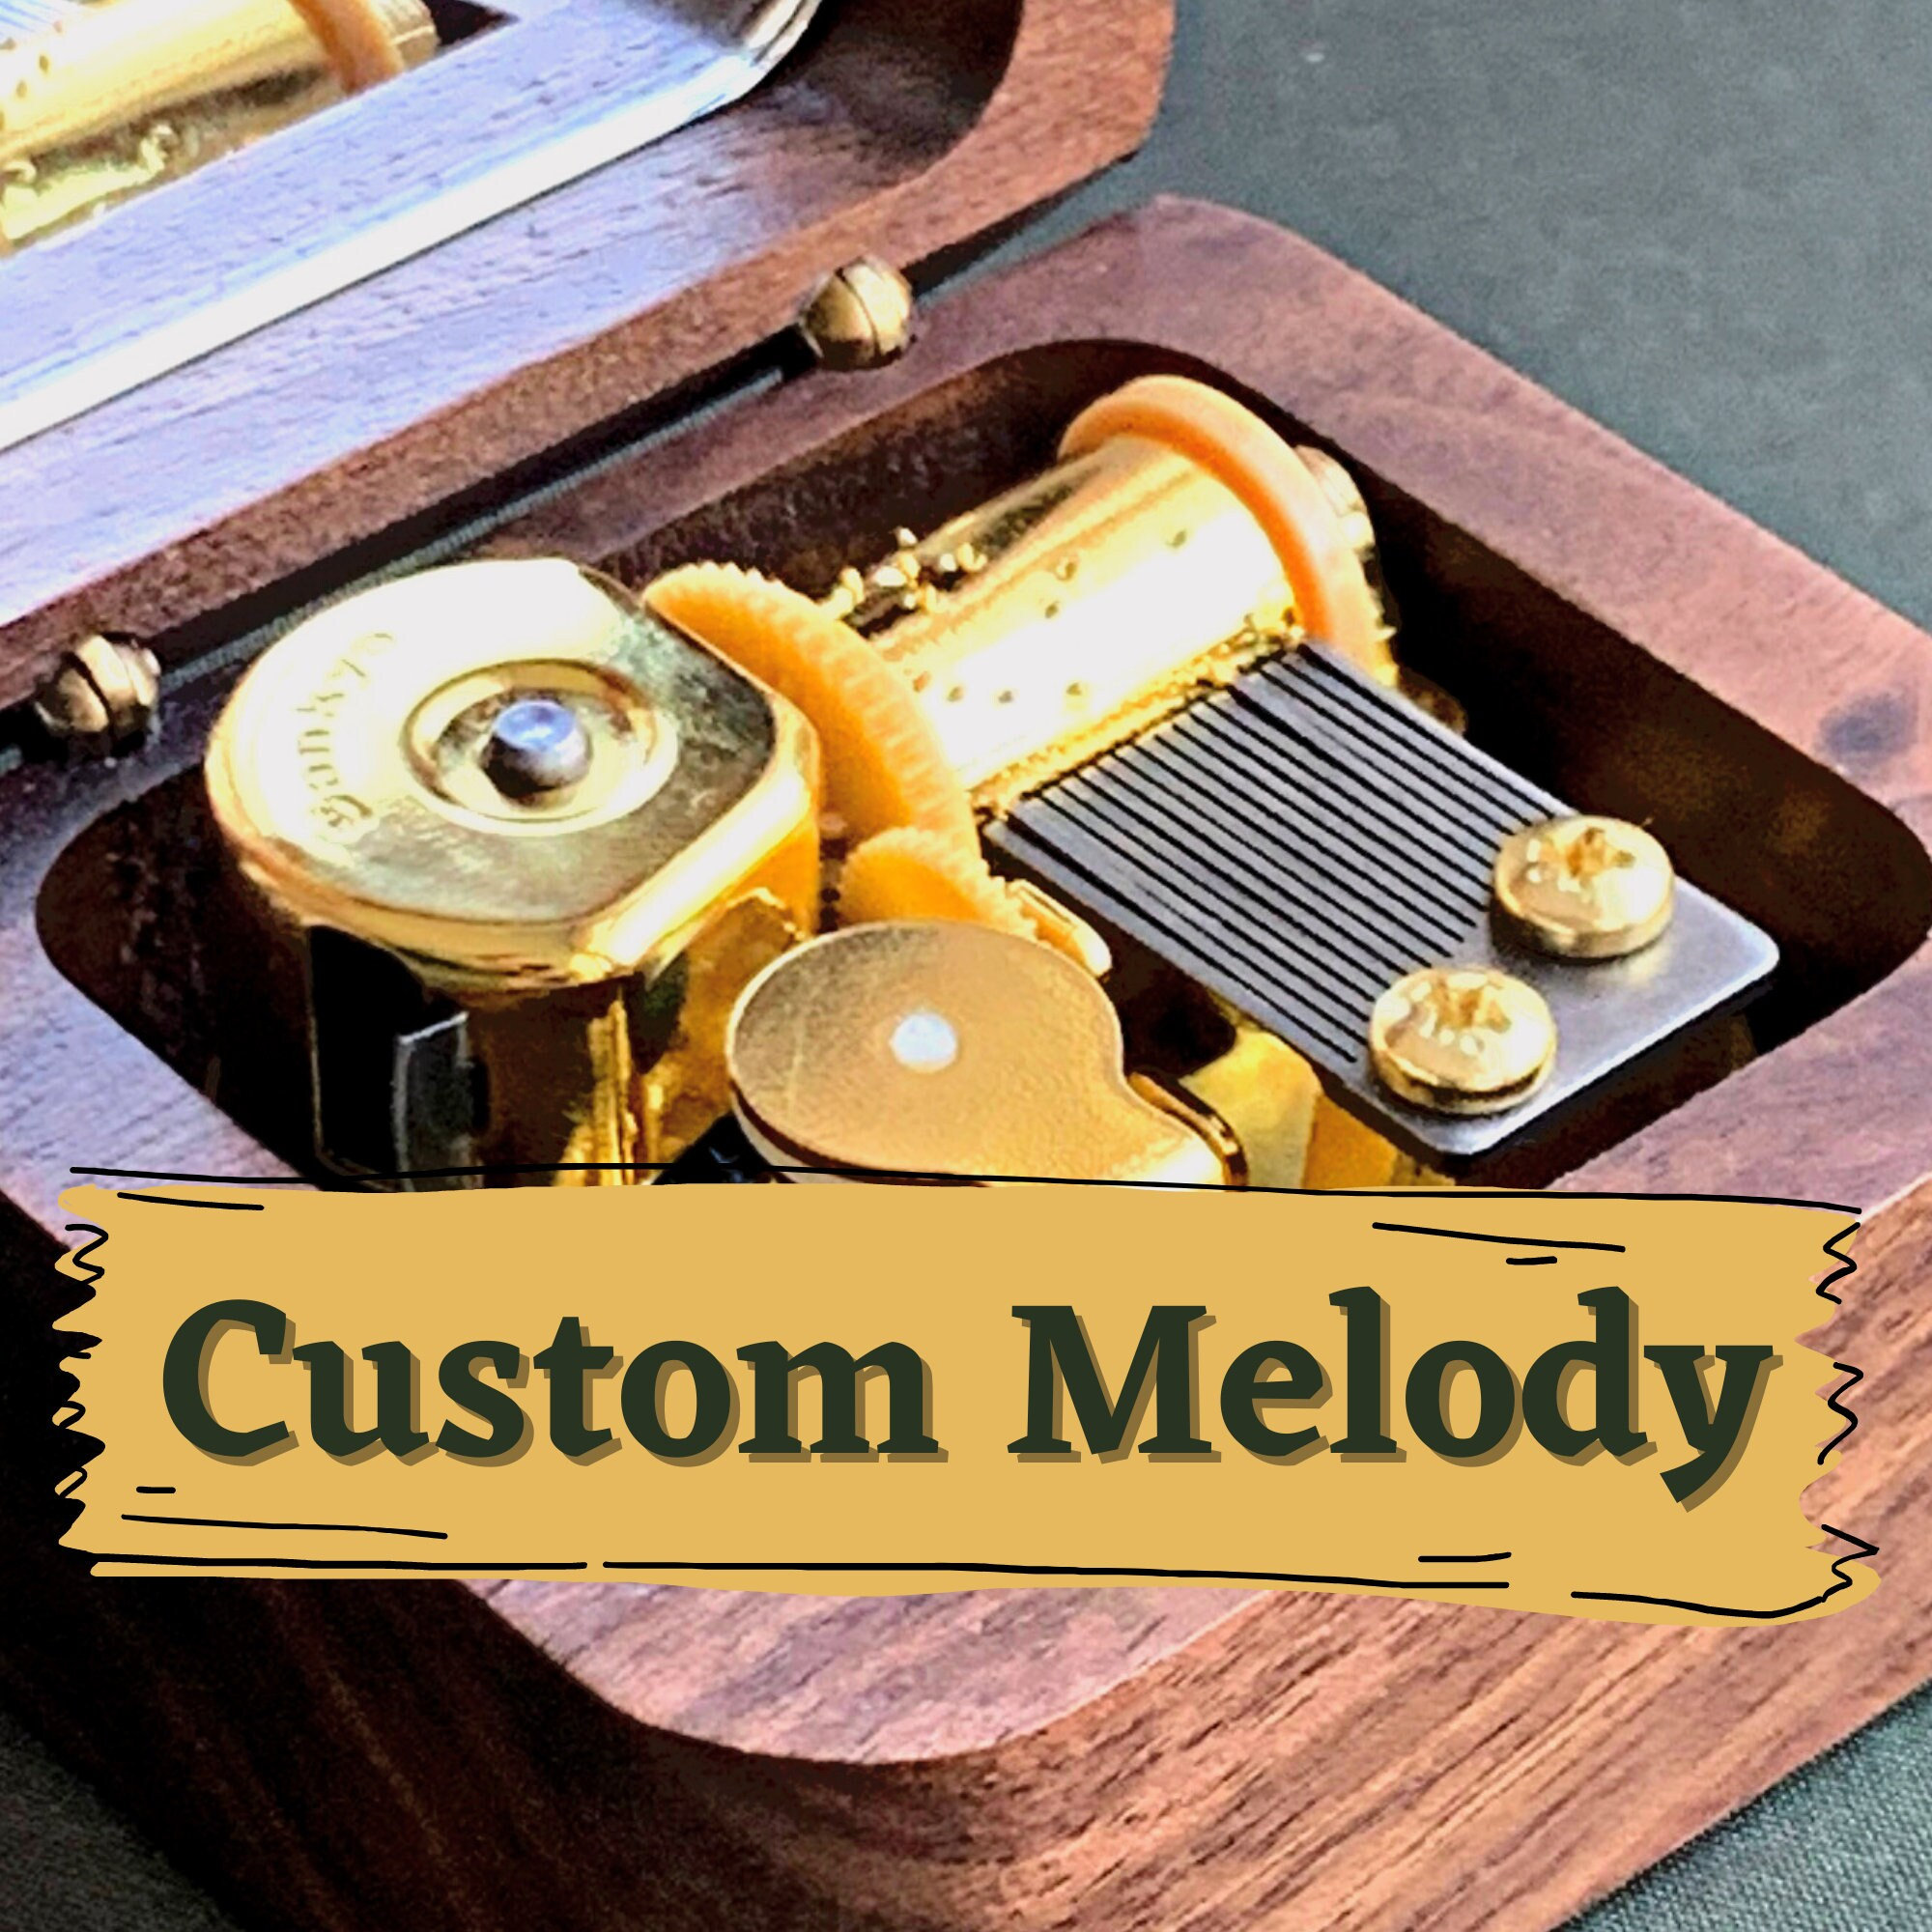 1. Donuma Custom Music Box